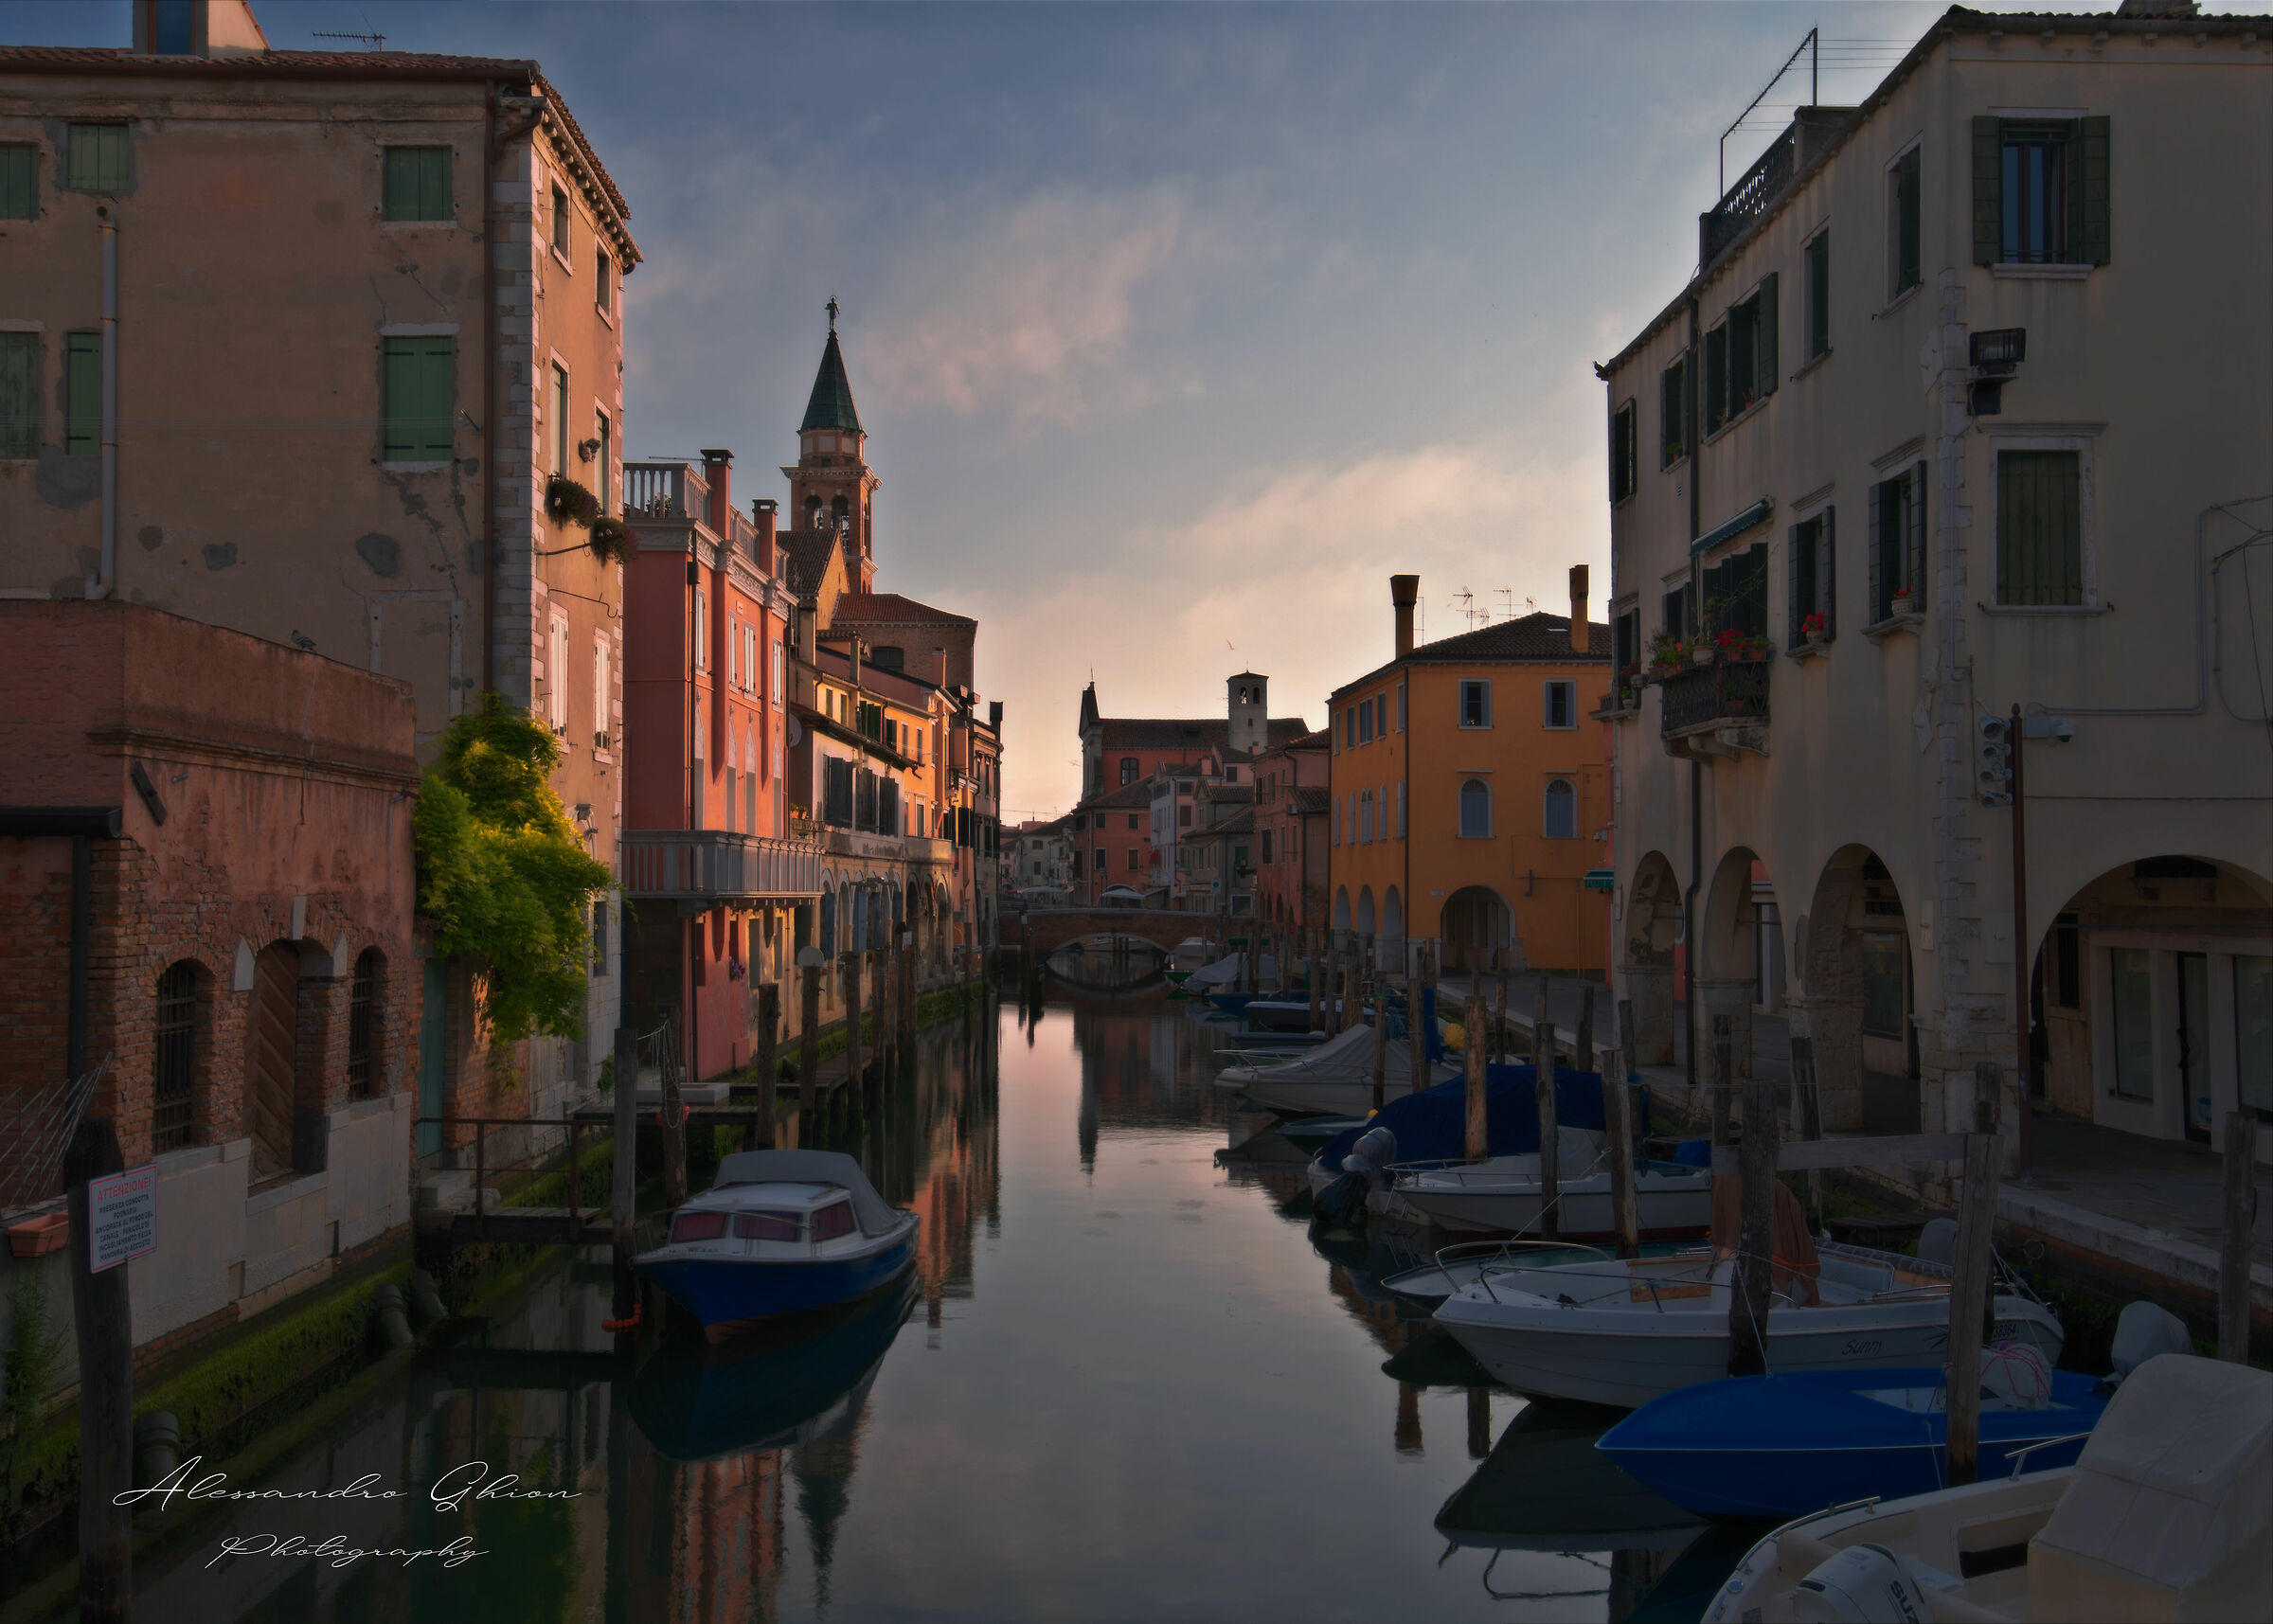 Little Venice dreams...